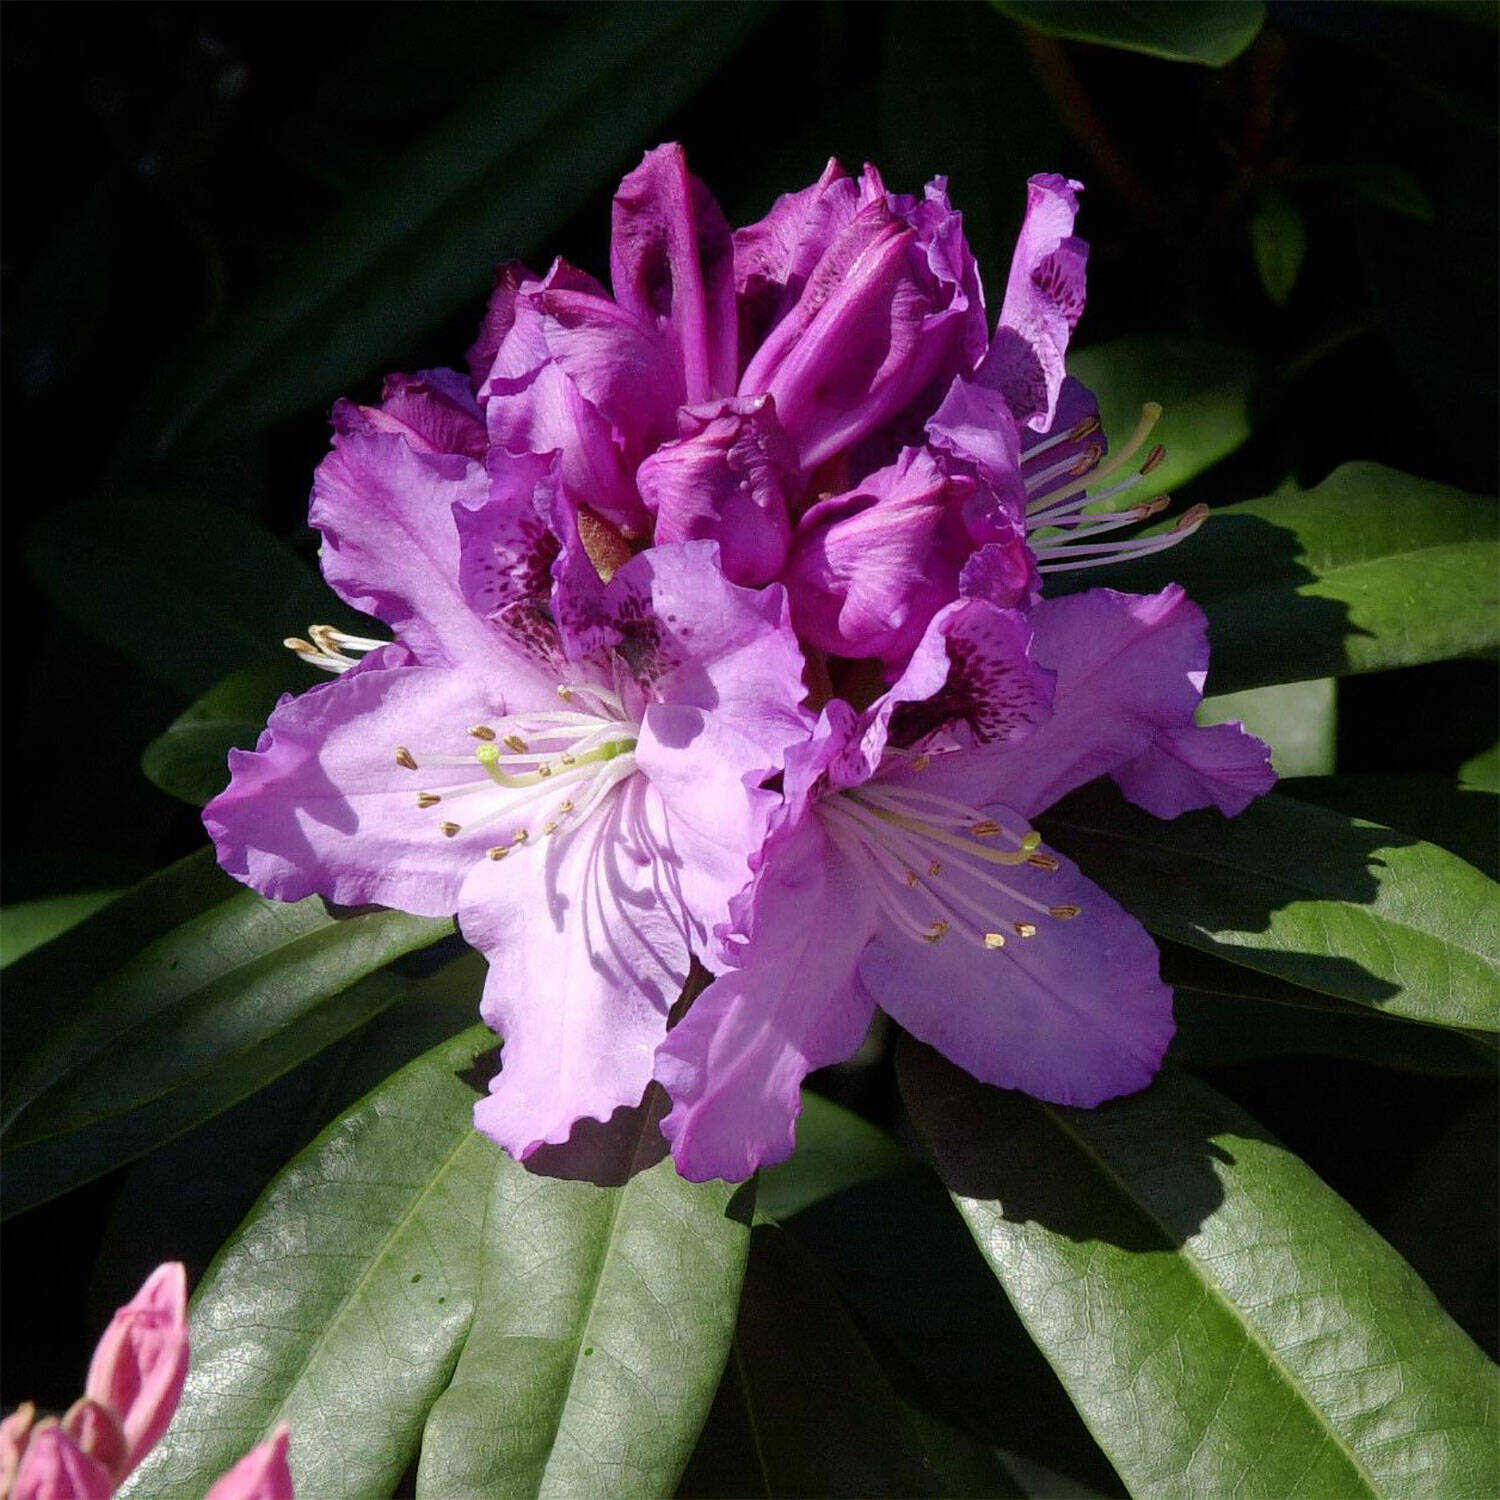 Kategorie <b>Hecken </b> - Rhododendron 'Pfauenauge'® - Rhododendron Hybride 'Pfauenauge'®